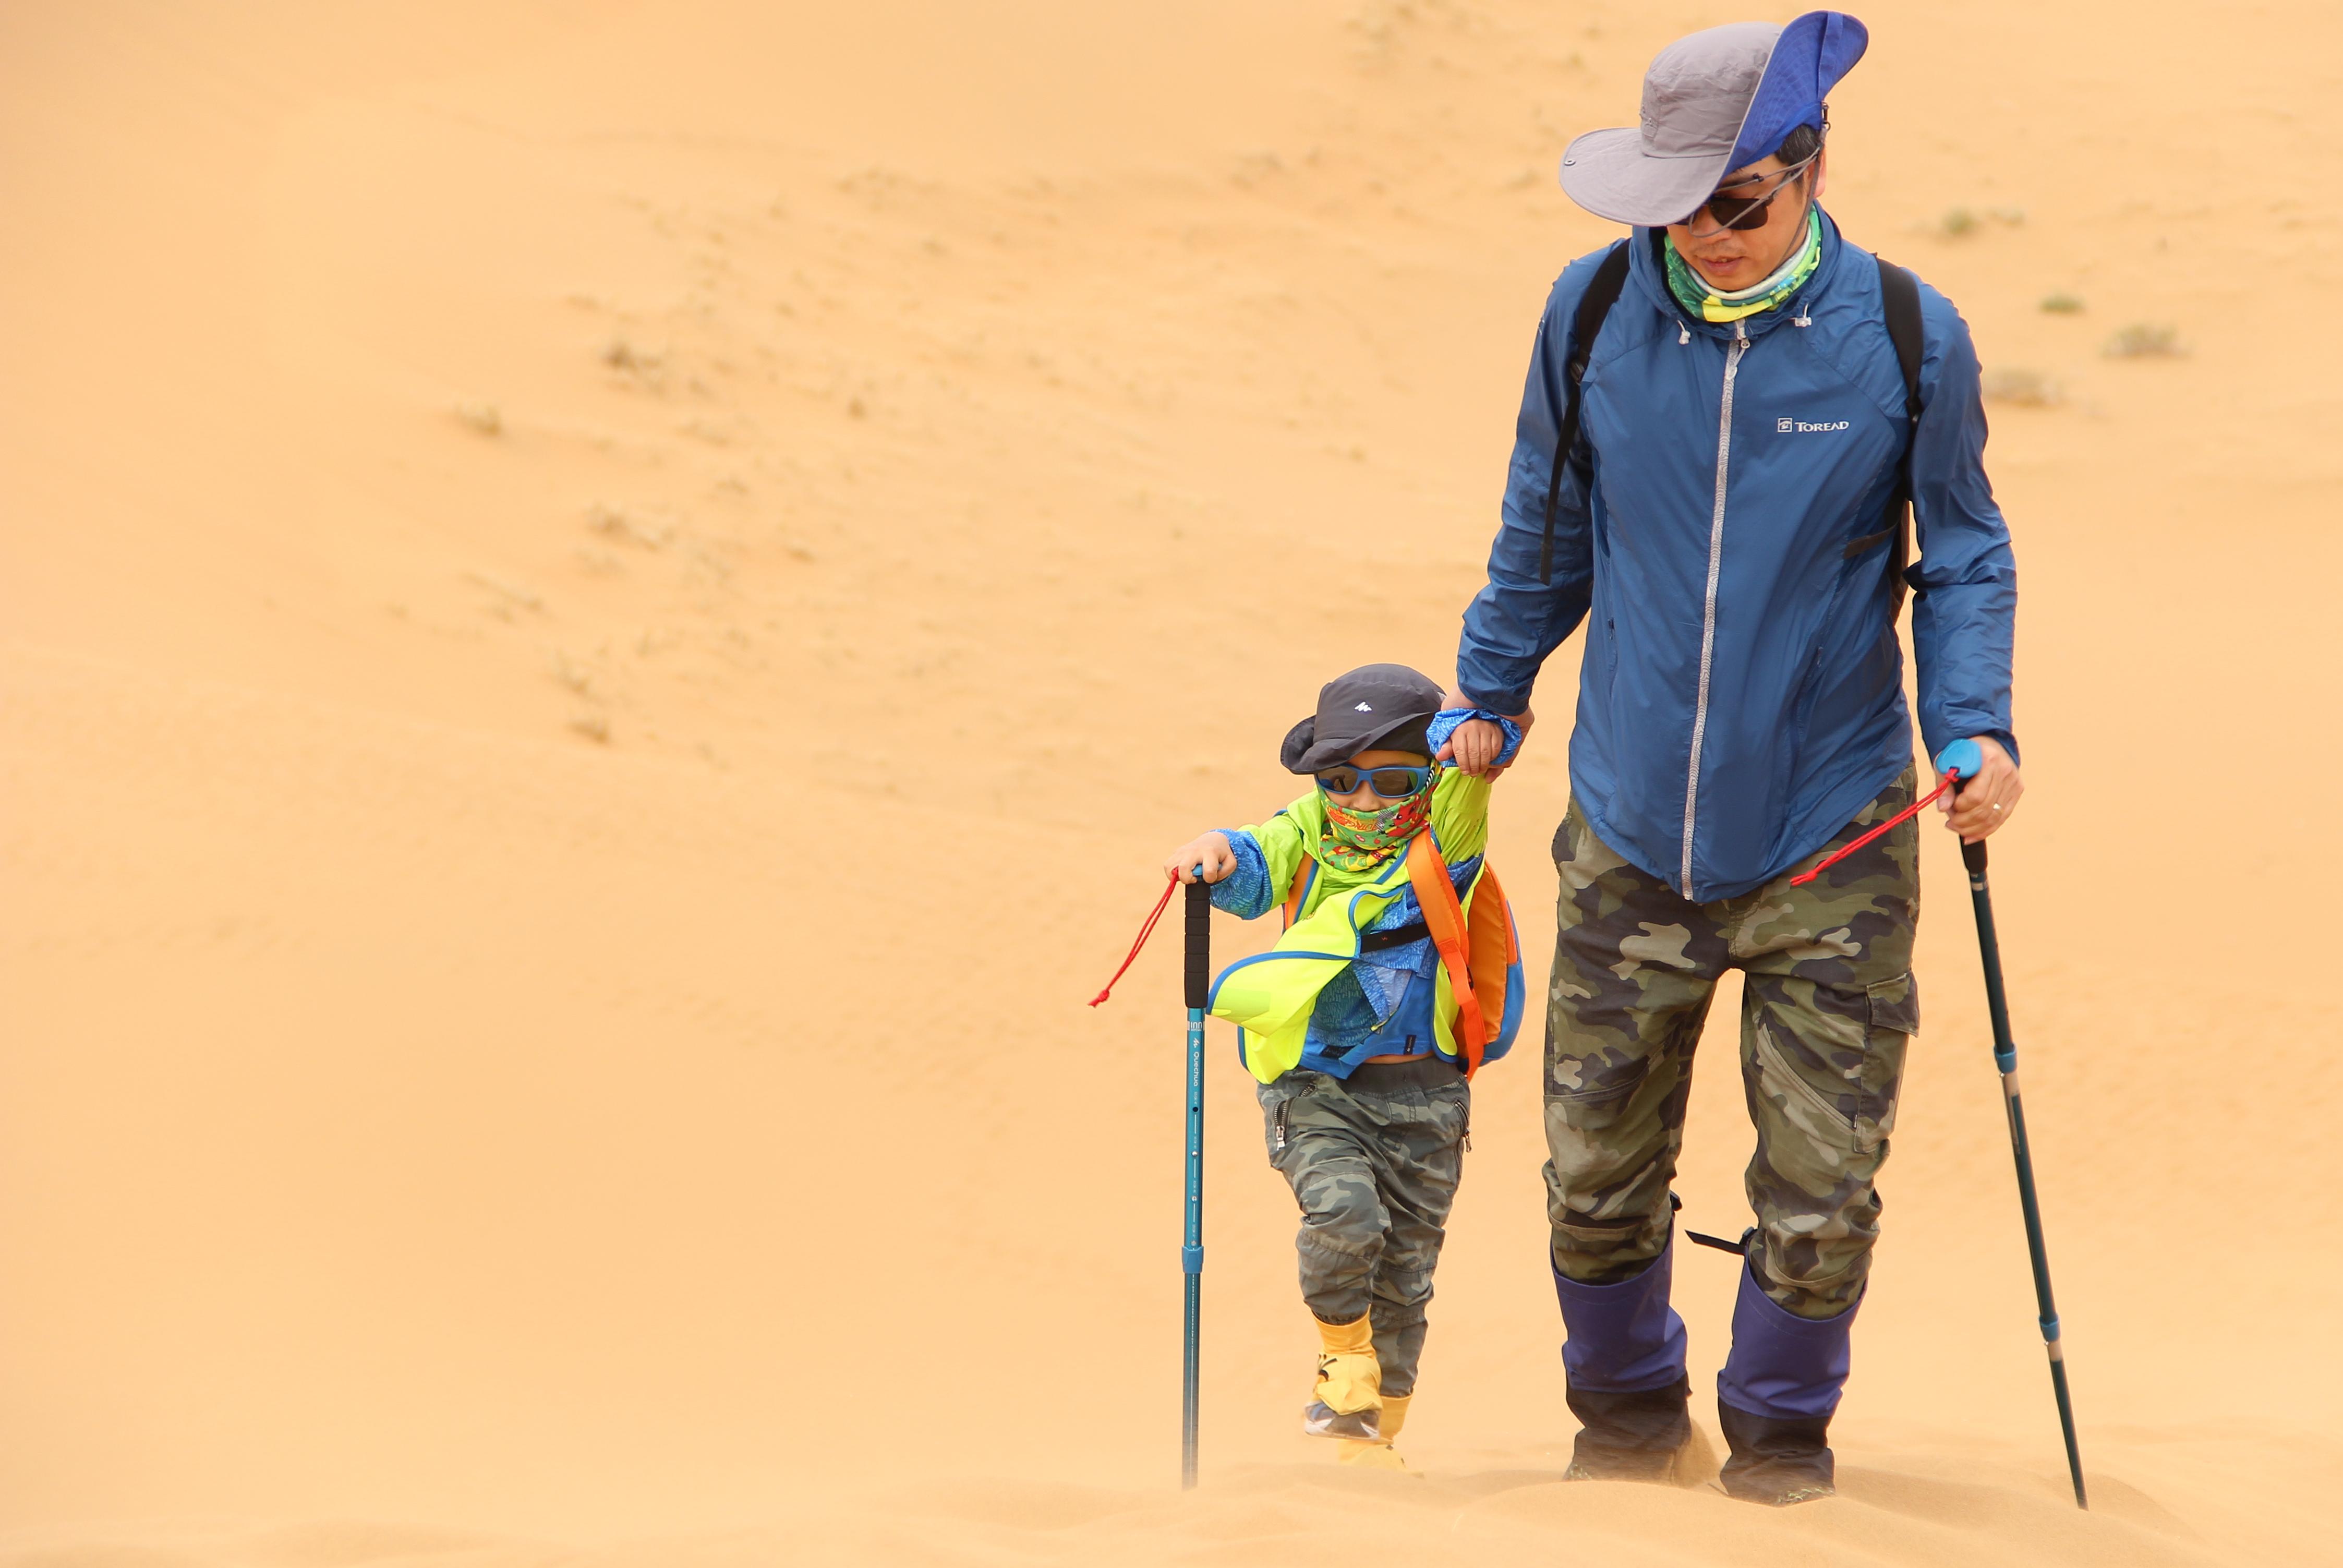 腾格里沙漠3-4天徒步穿越玩法推荐 - 知乎